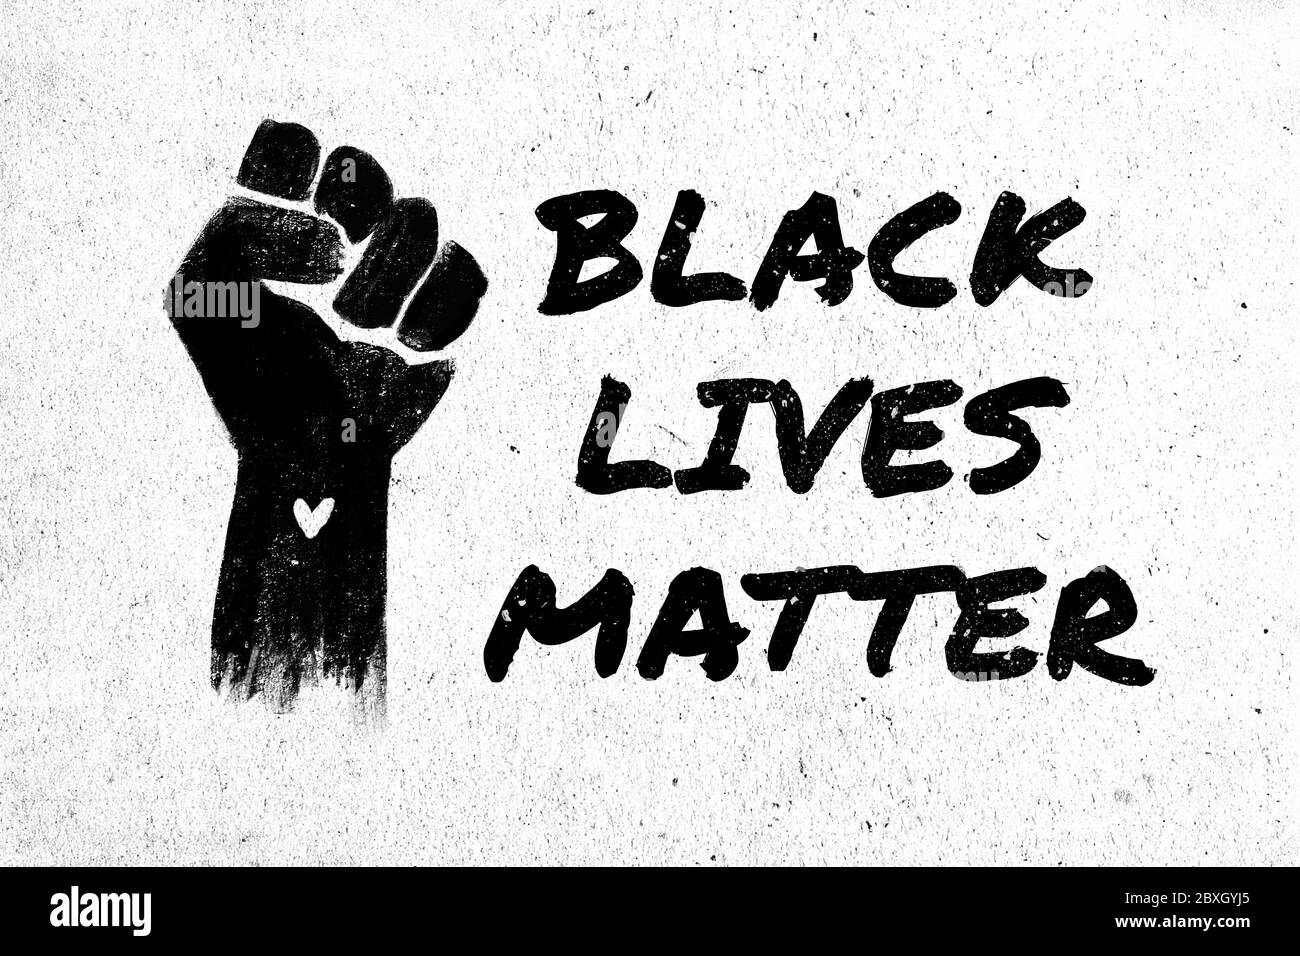 Stock Illustration einer erhöhten schwarzen Faust und der Satz Black Lives Matter in Graffiti-Stil auf einem weißen texturierten Hintergrund aus Protest gegen den Tod o Stockfoto